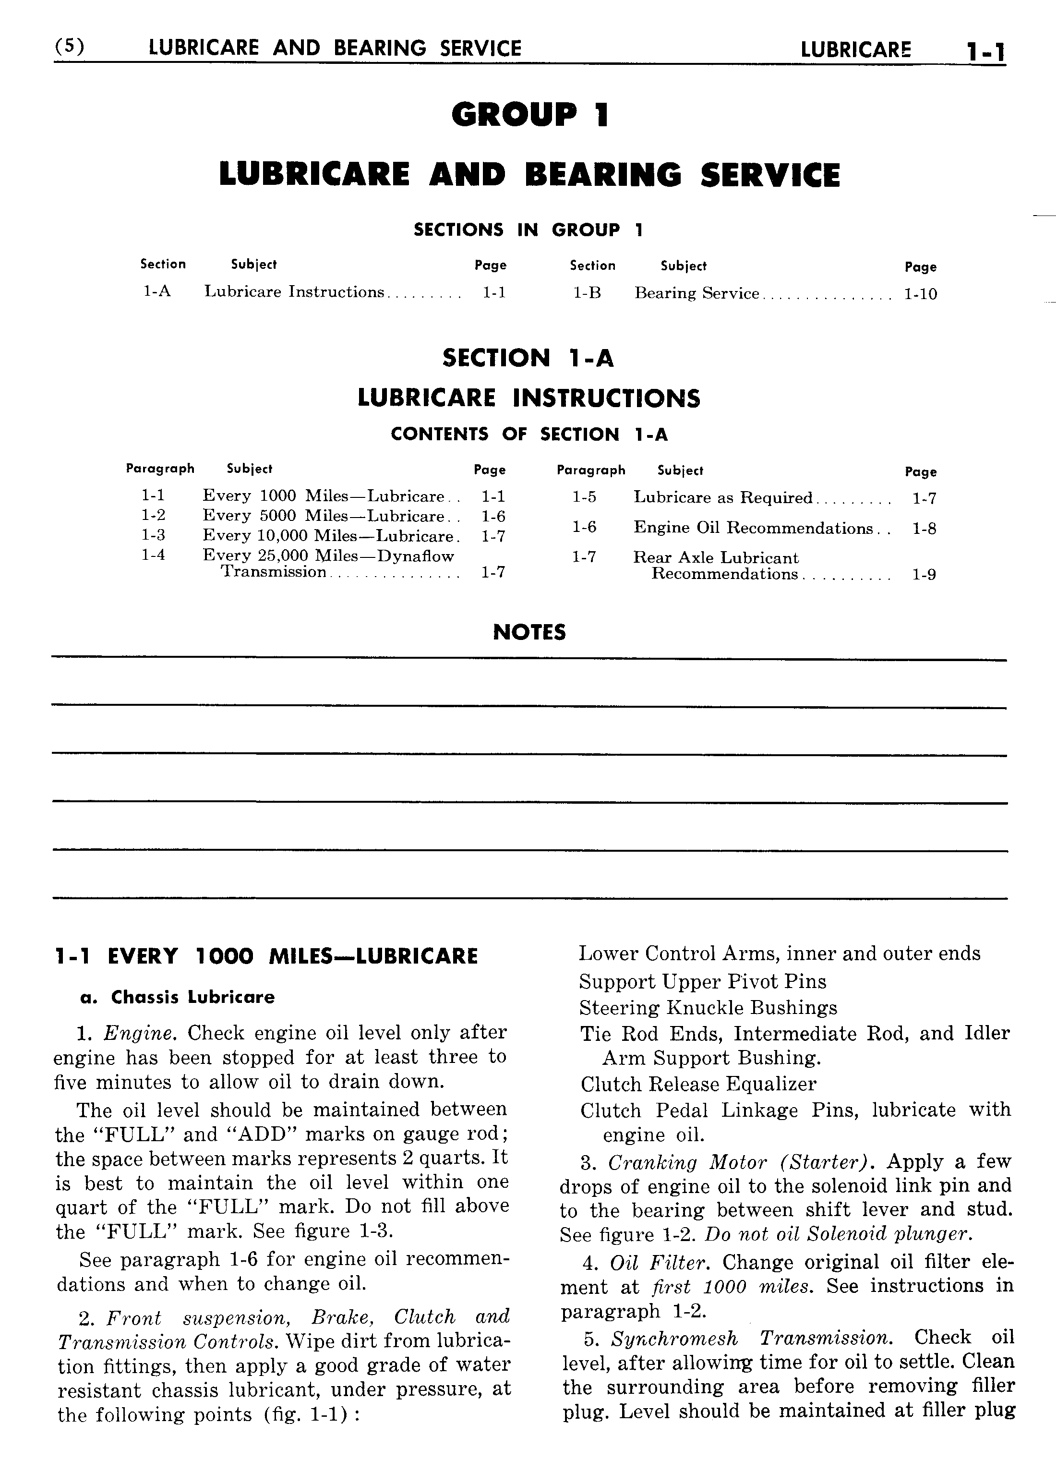 n_02 1956 Buick Shop Manual - Lubricare-001-001.jpg